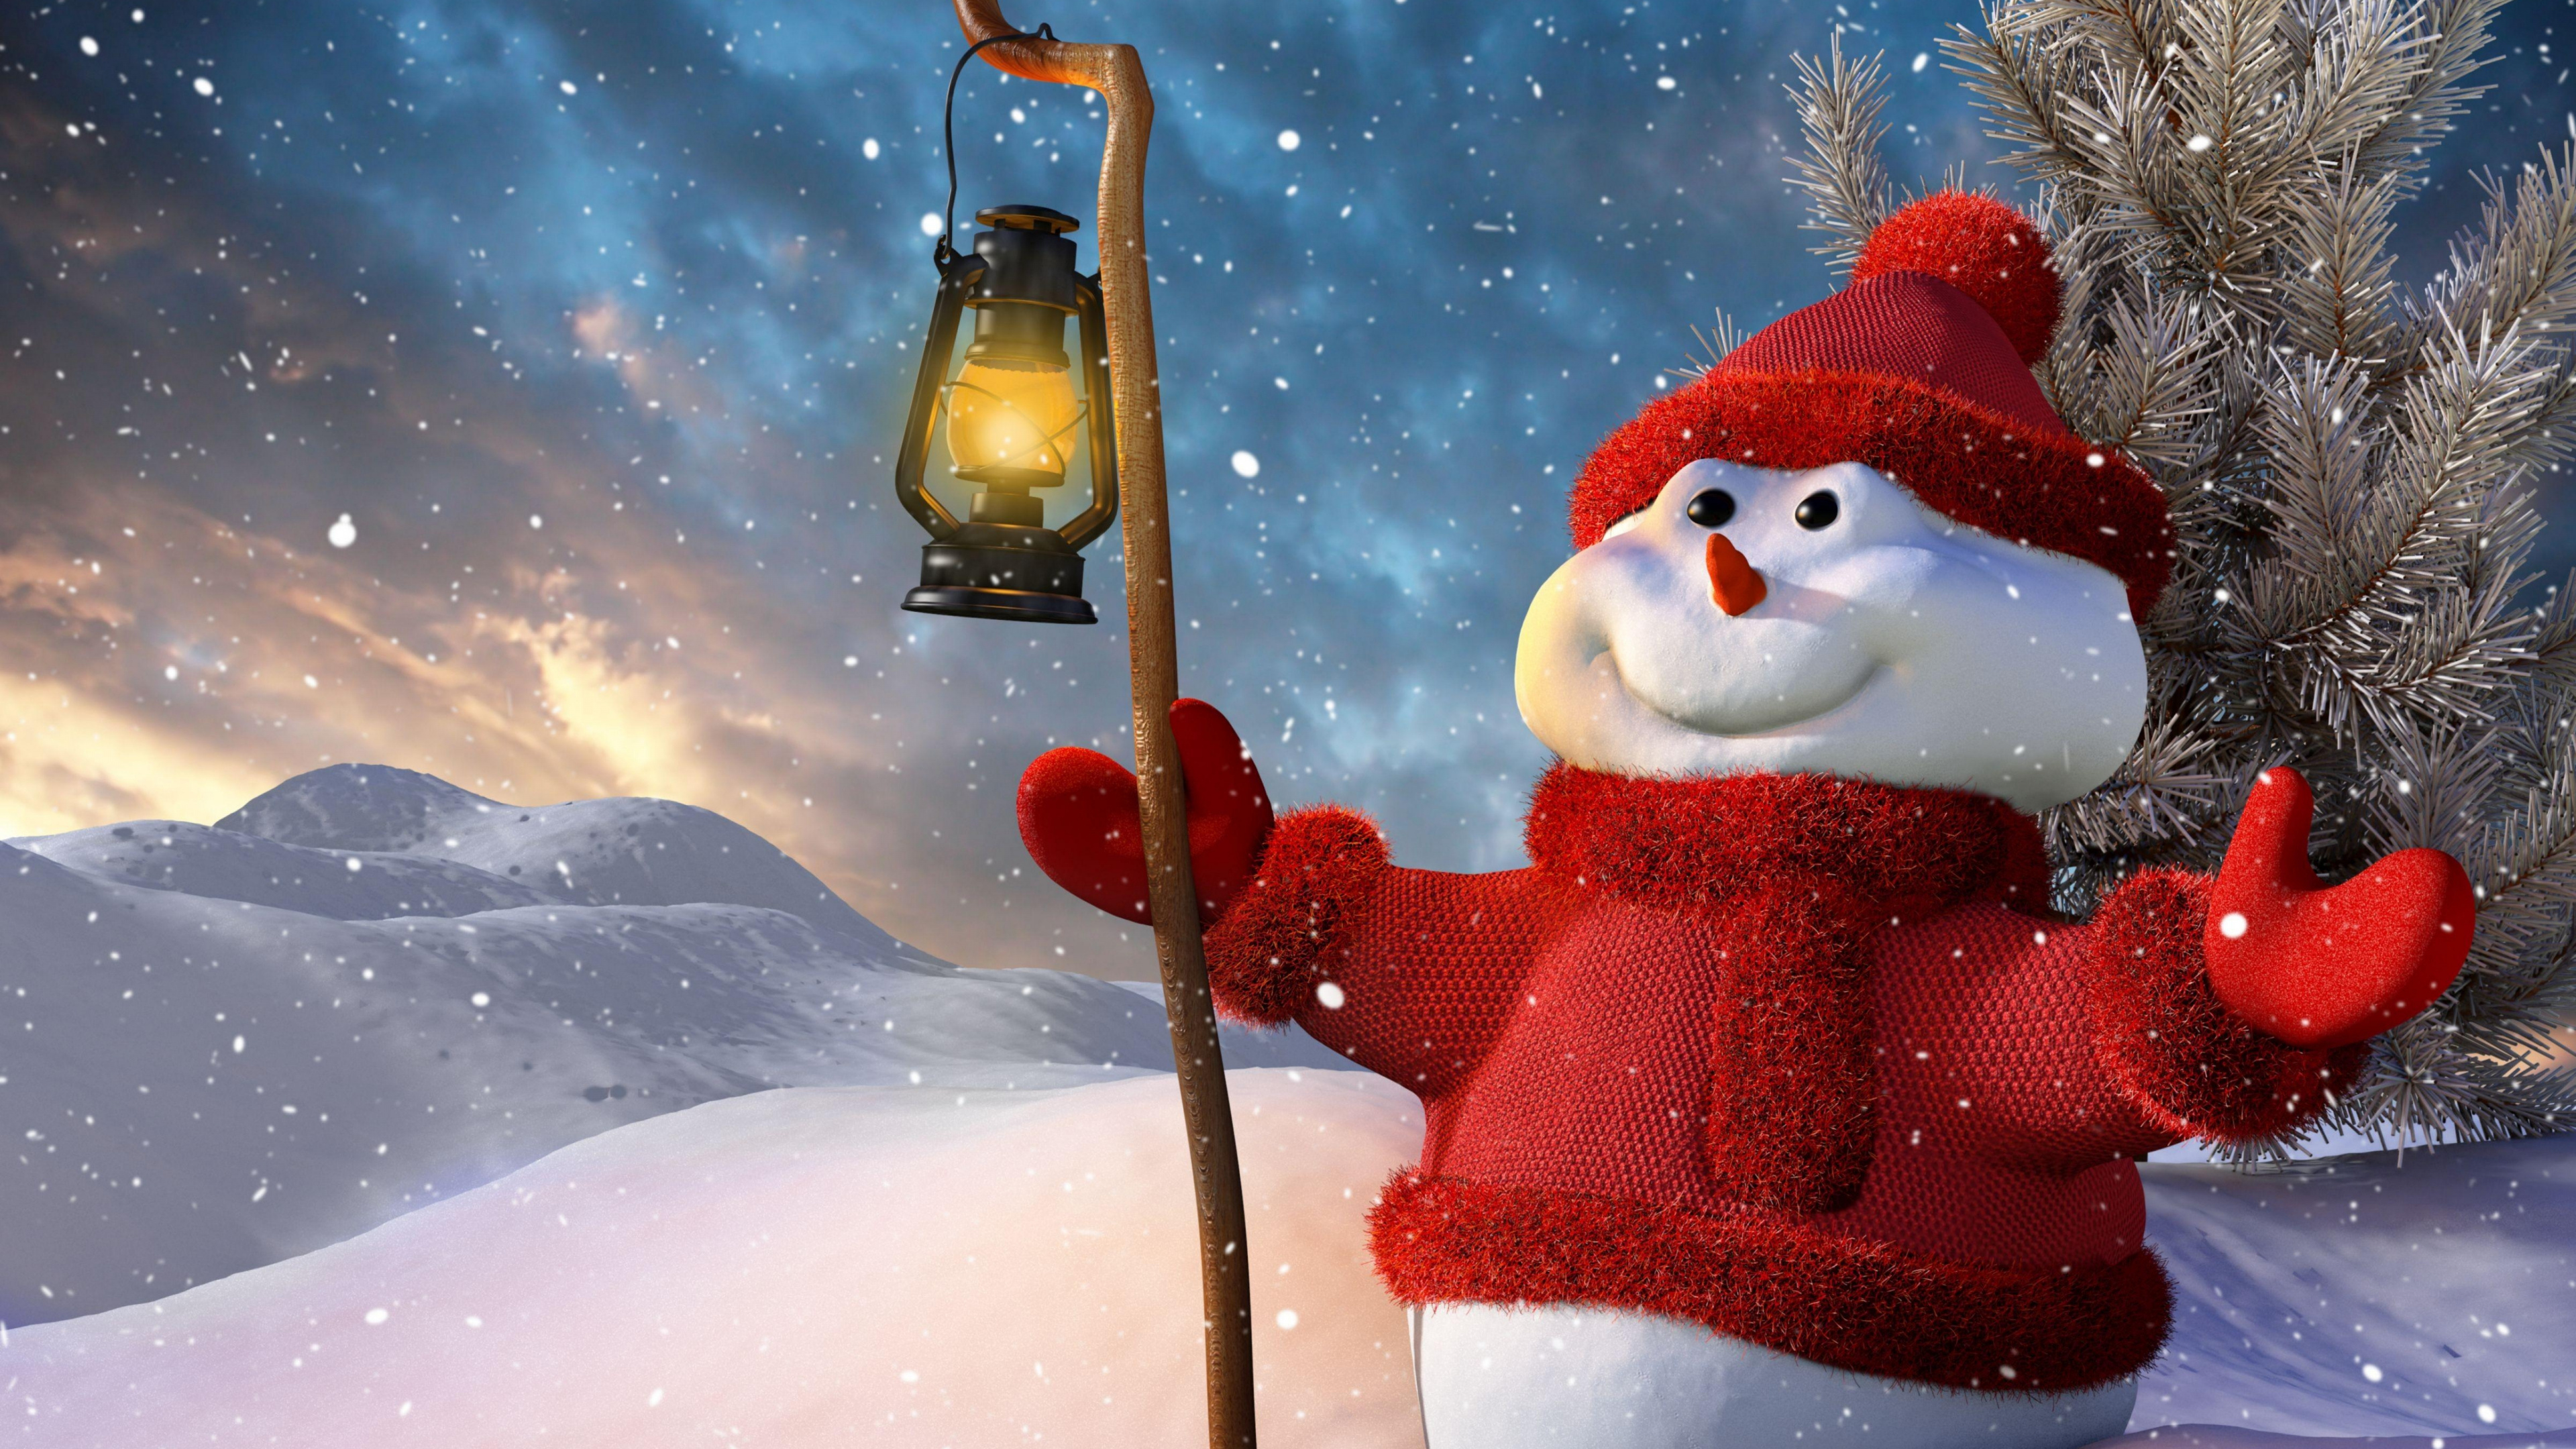 雪人, 圣诞节, 空间, 冻结, 圣诞树 壁纸 3840x2160 允许